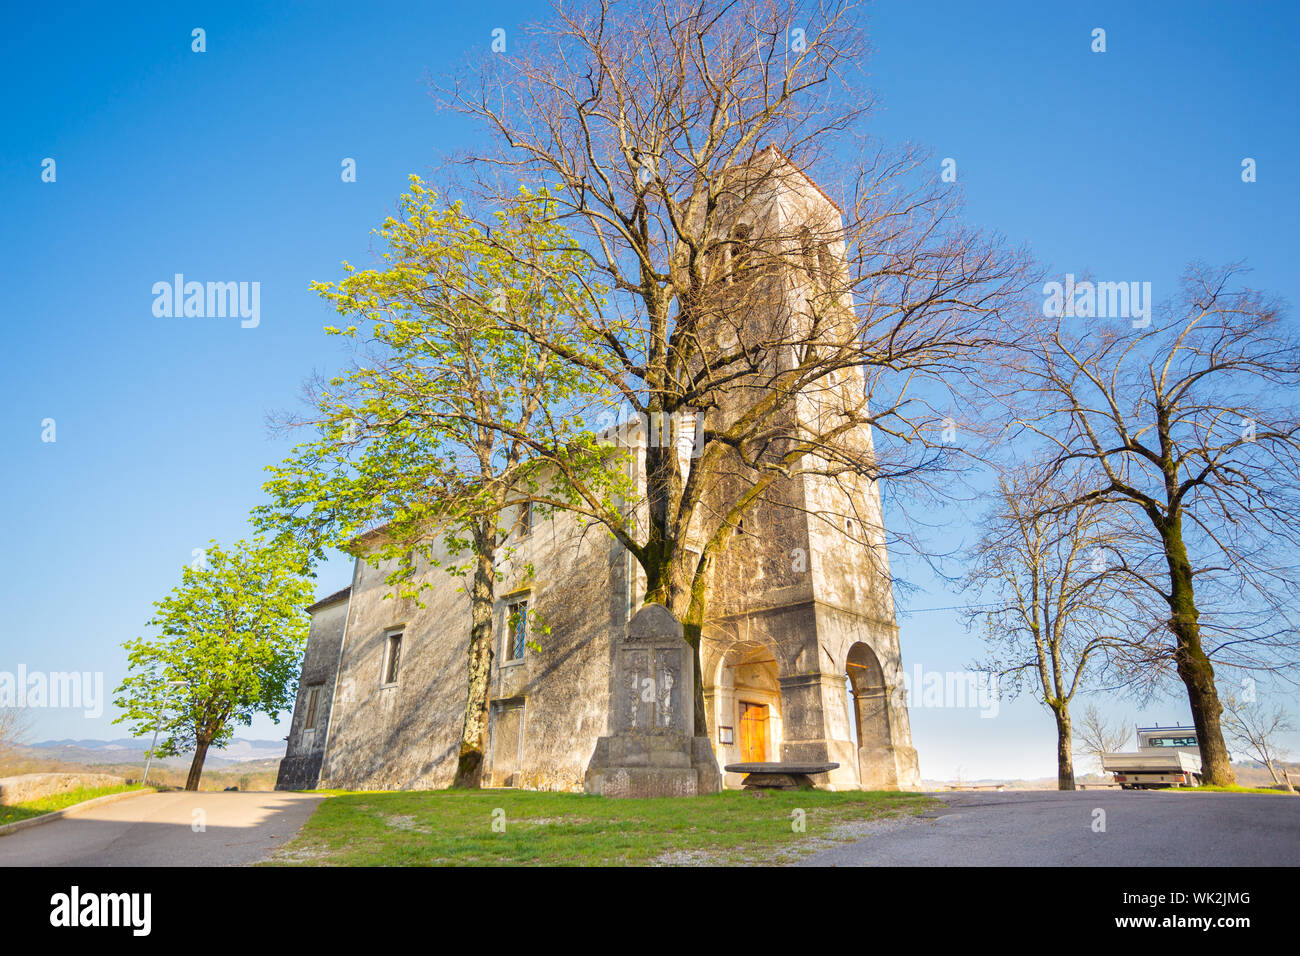 Chiesa di saint Elija dal 1802 nel villaggio di Kopriva, costa e la regione carsica della Slovenia, l'Europa. Foto Stock